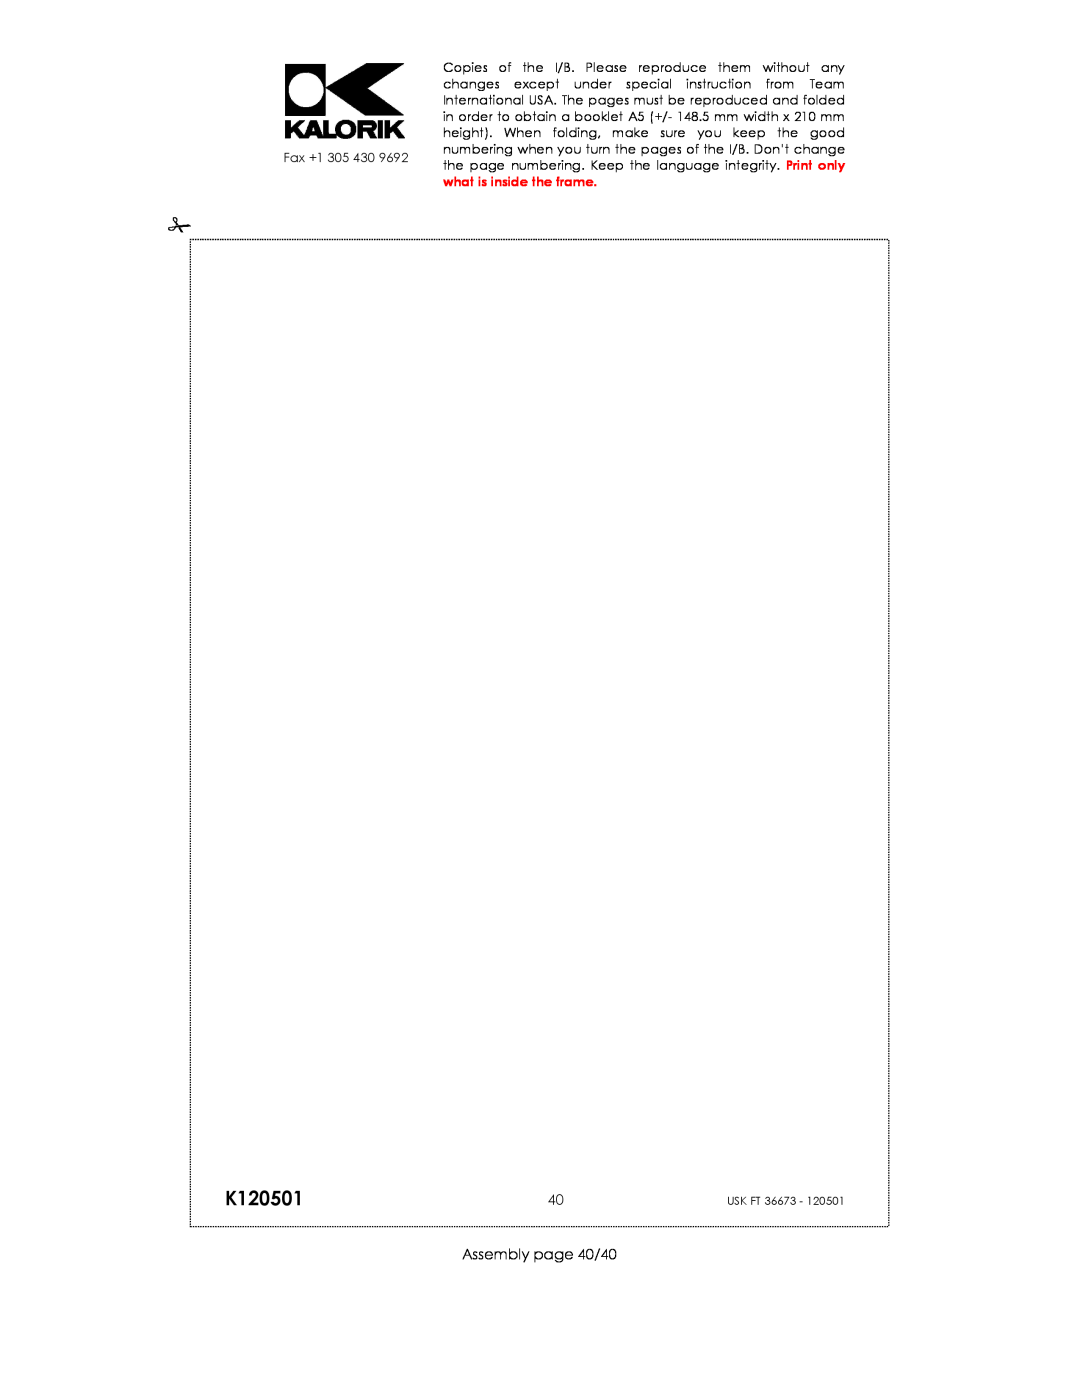 Kalorik USK FT 36673 manual K120501, Assembly page 40/40 